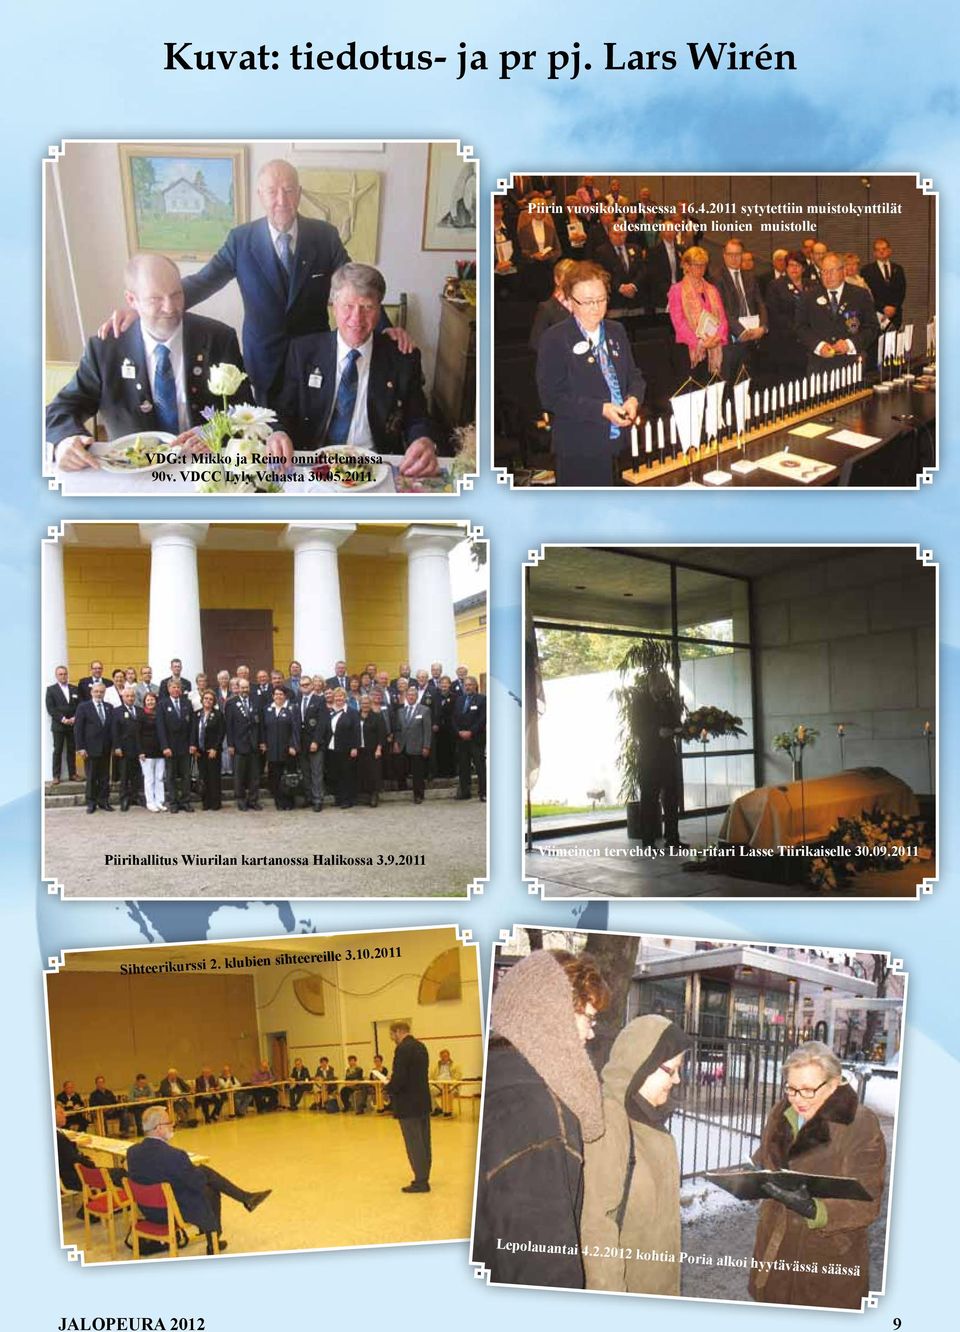 2011 sytytettiin muistokynttilät edesmenneiden lionien muistolle VDG:t Mikko ja Reino onnittelemassa 90v.